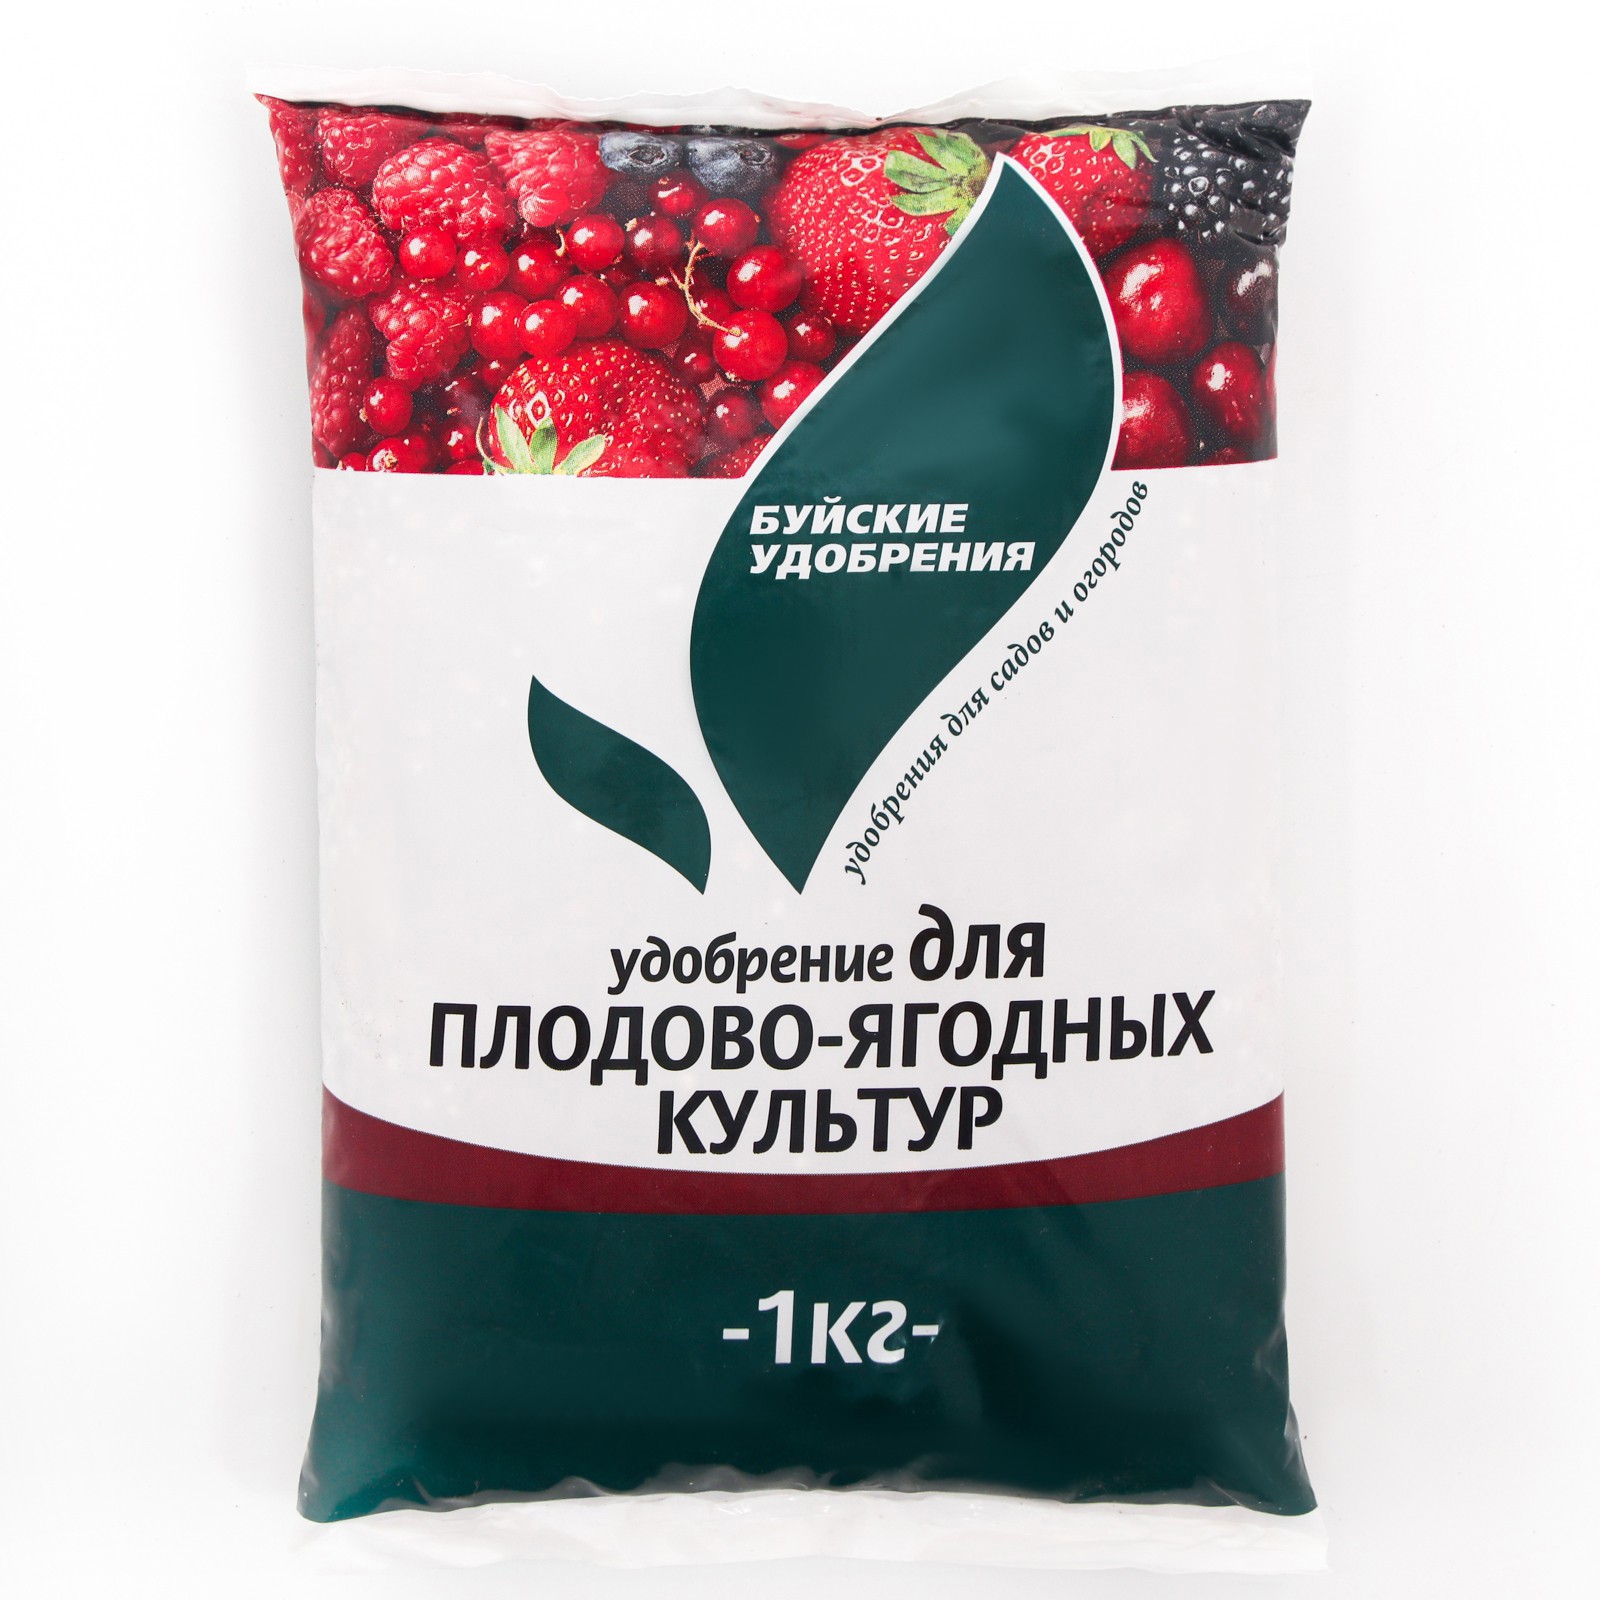 91032115 Удобрение минеральное для плодово-ягодных культур 1 кг STLM-0449978 БУЙСКИЕ УДОБРЕНИЯ